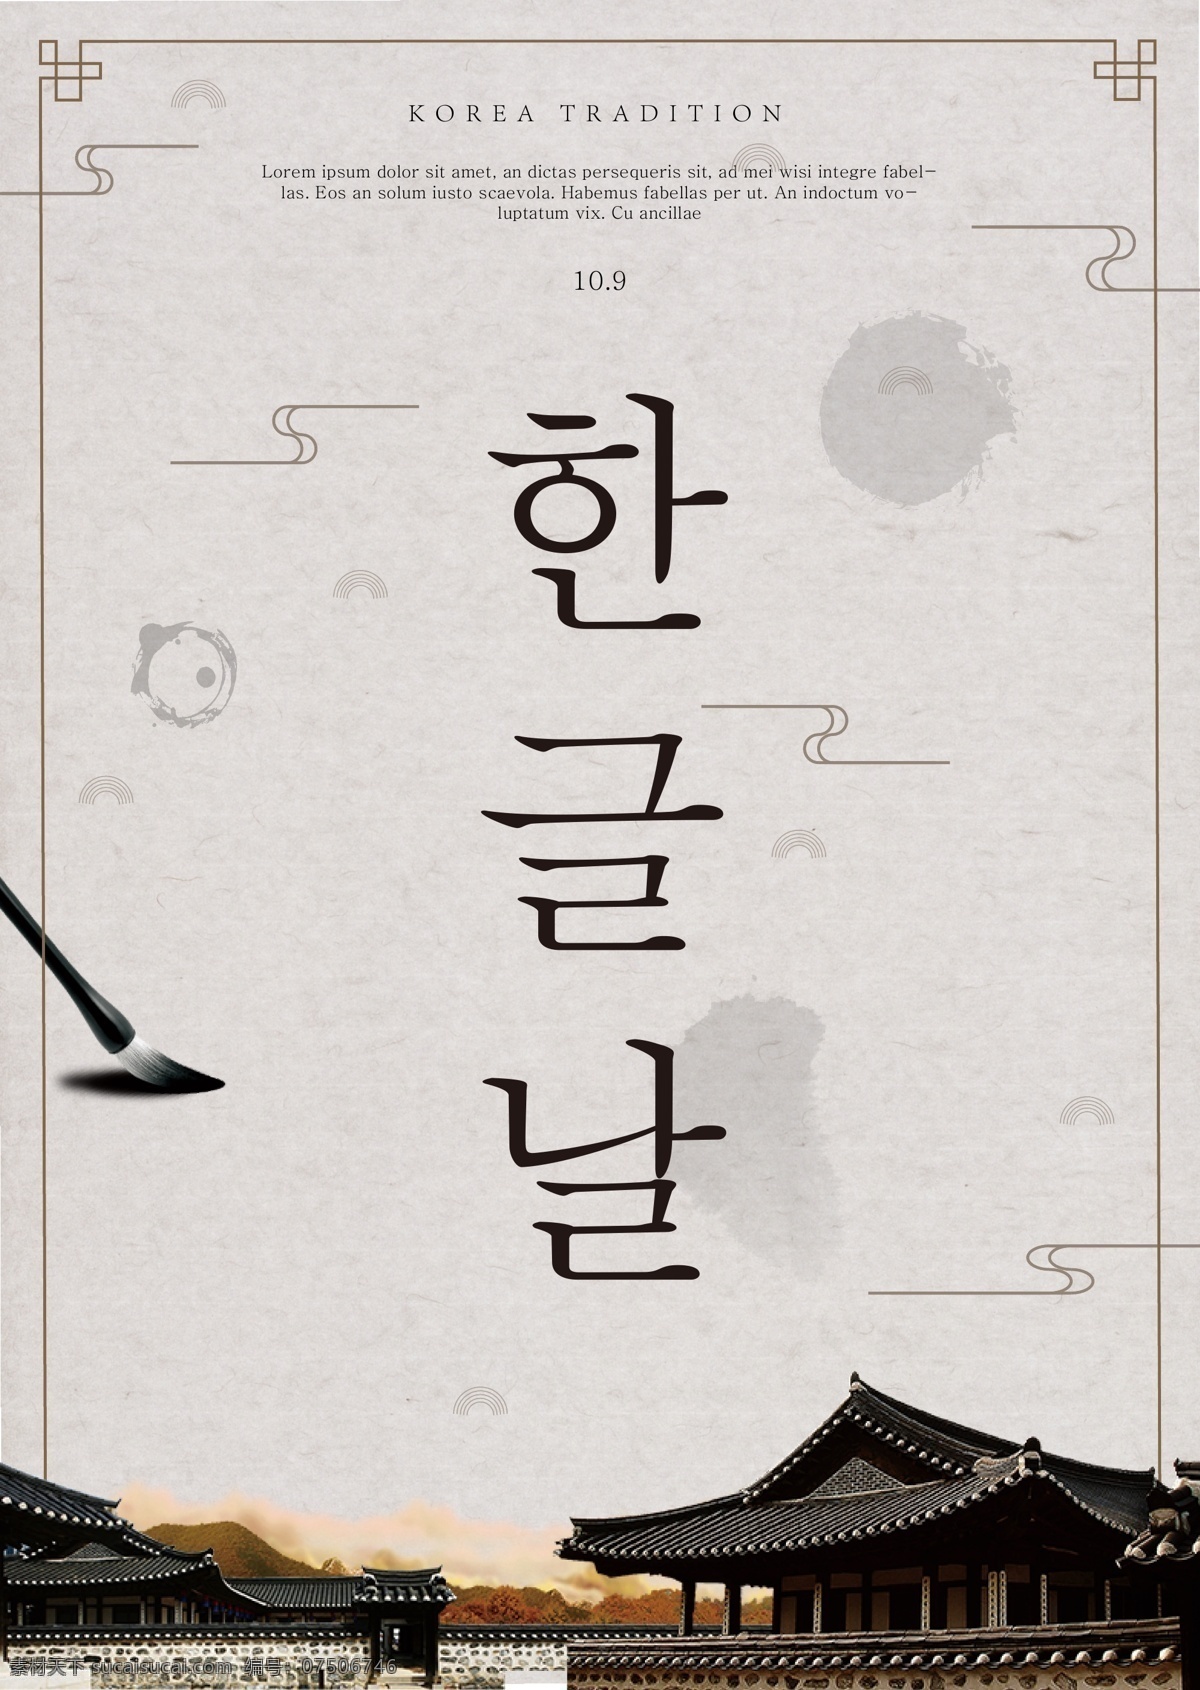 经典 韩国 传统 韩文 海报 经典海报 泛 模板